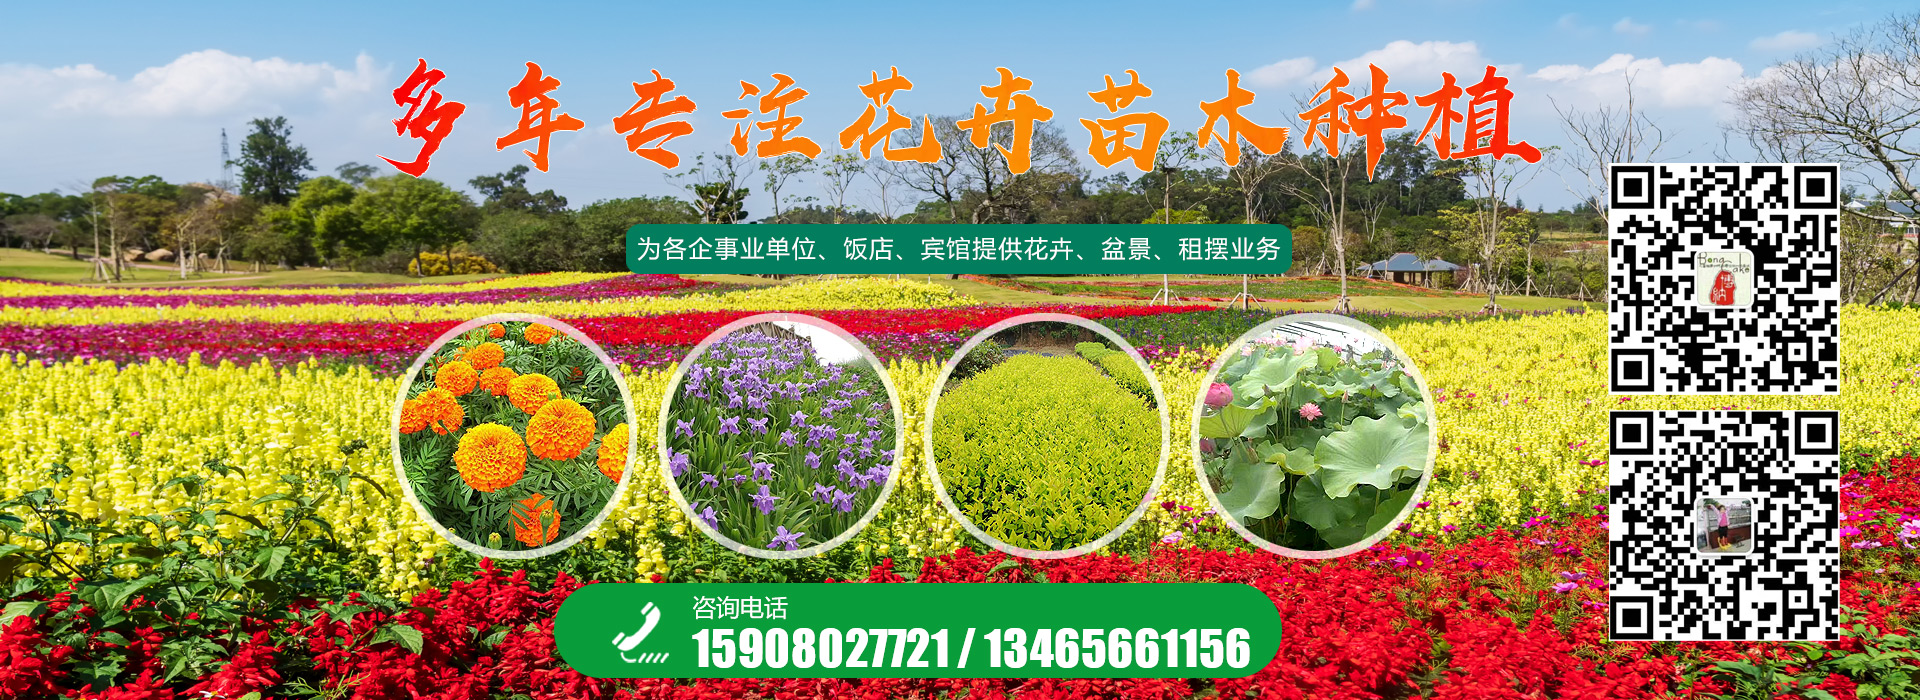 青州市國樾生態農業有限公司